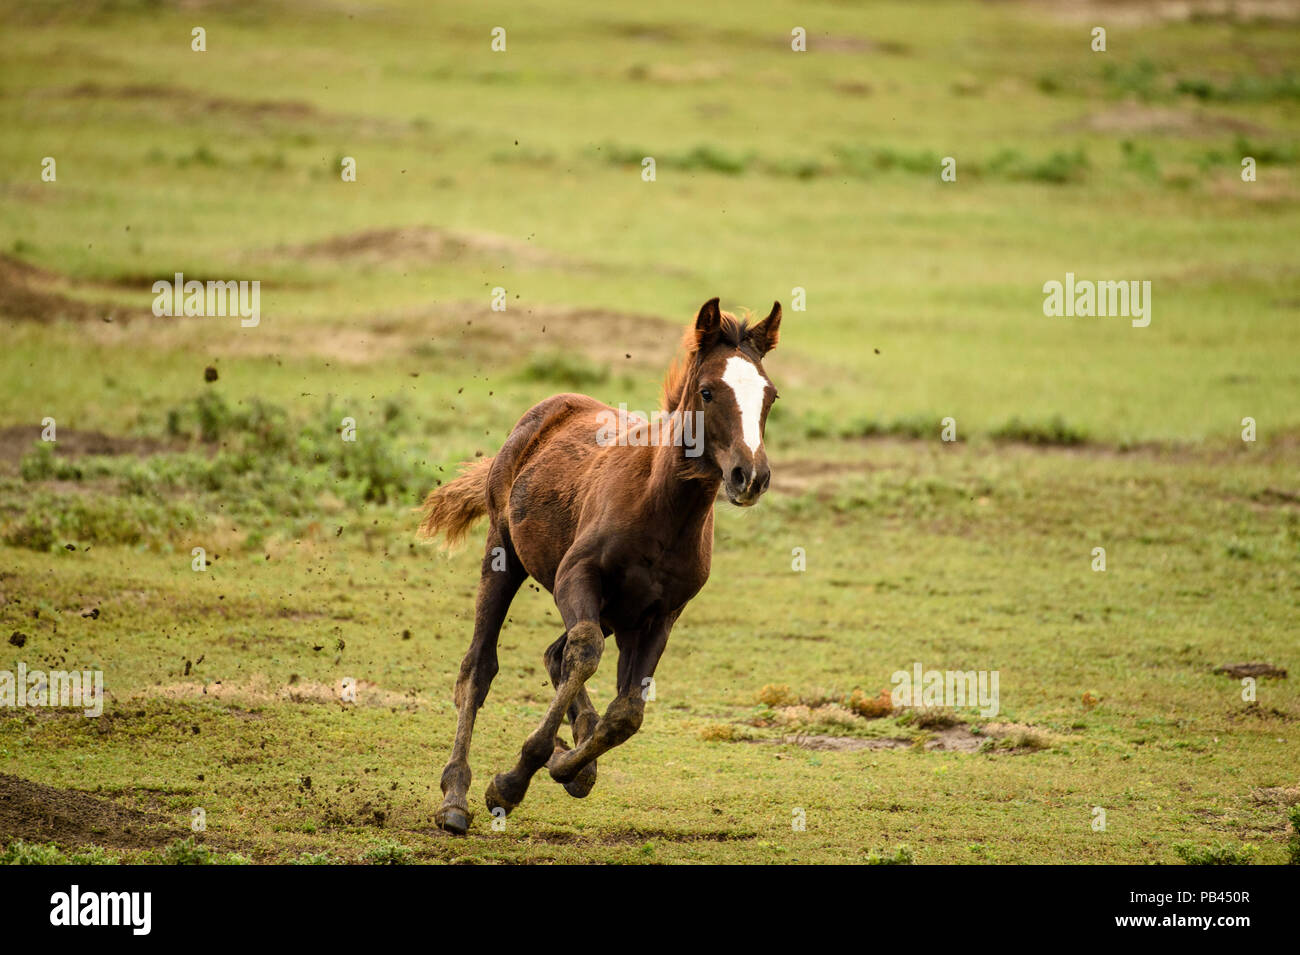 Feral horse (Equus ferus) or (Equus ferus caballus), Theodore Roosevelt National Park (South Unit), North Dakota, USA Stock Photo